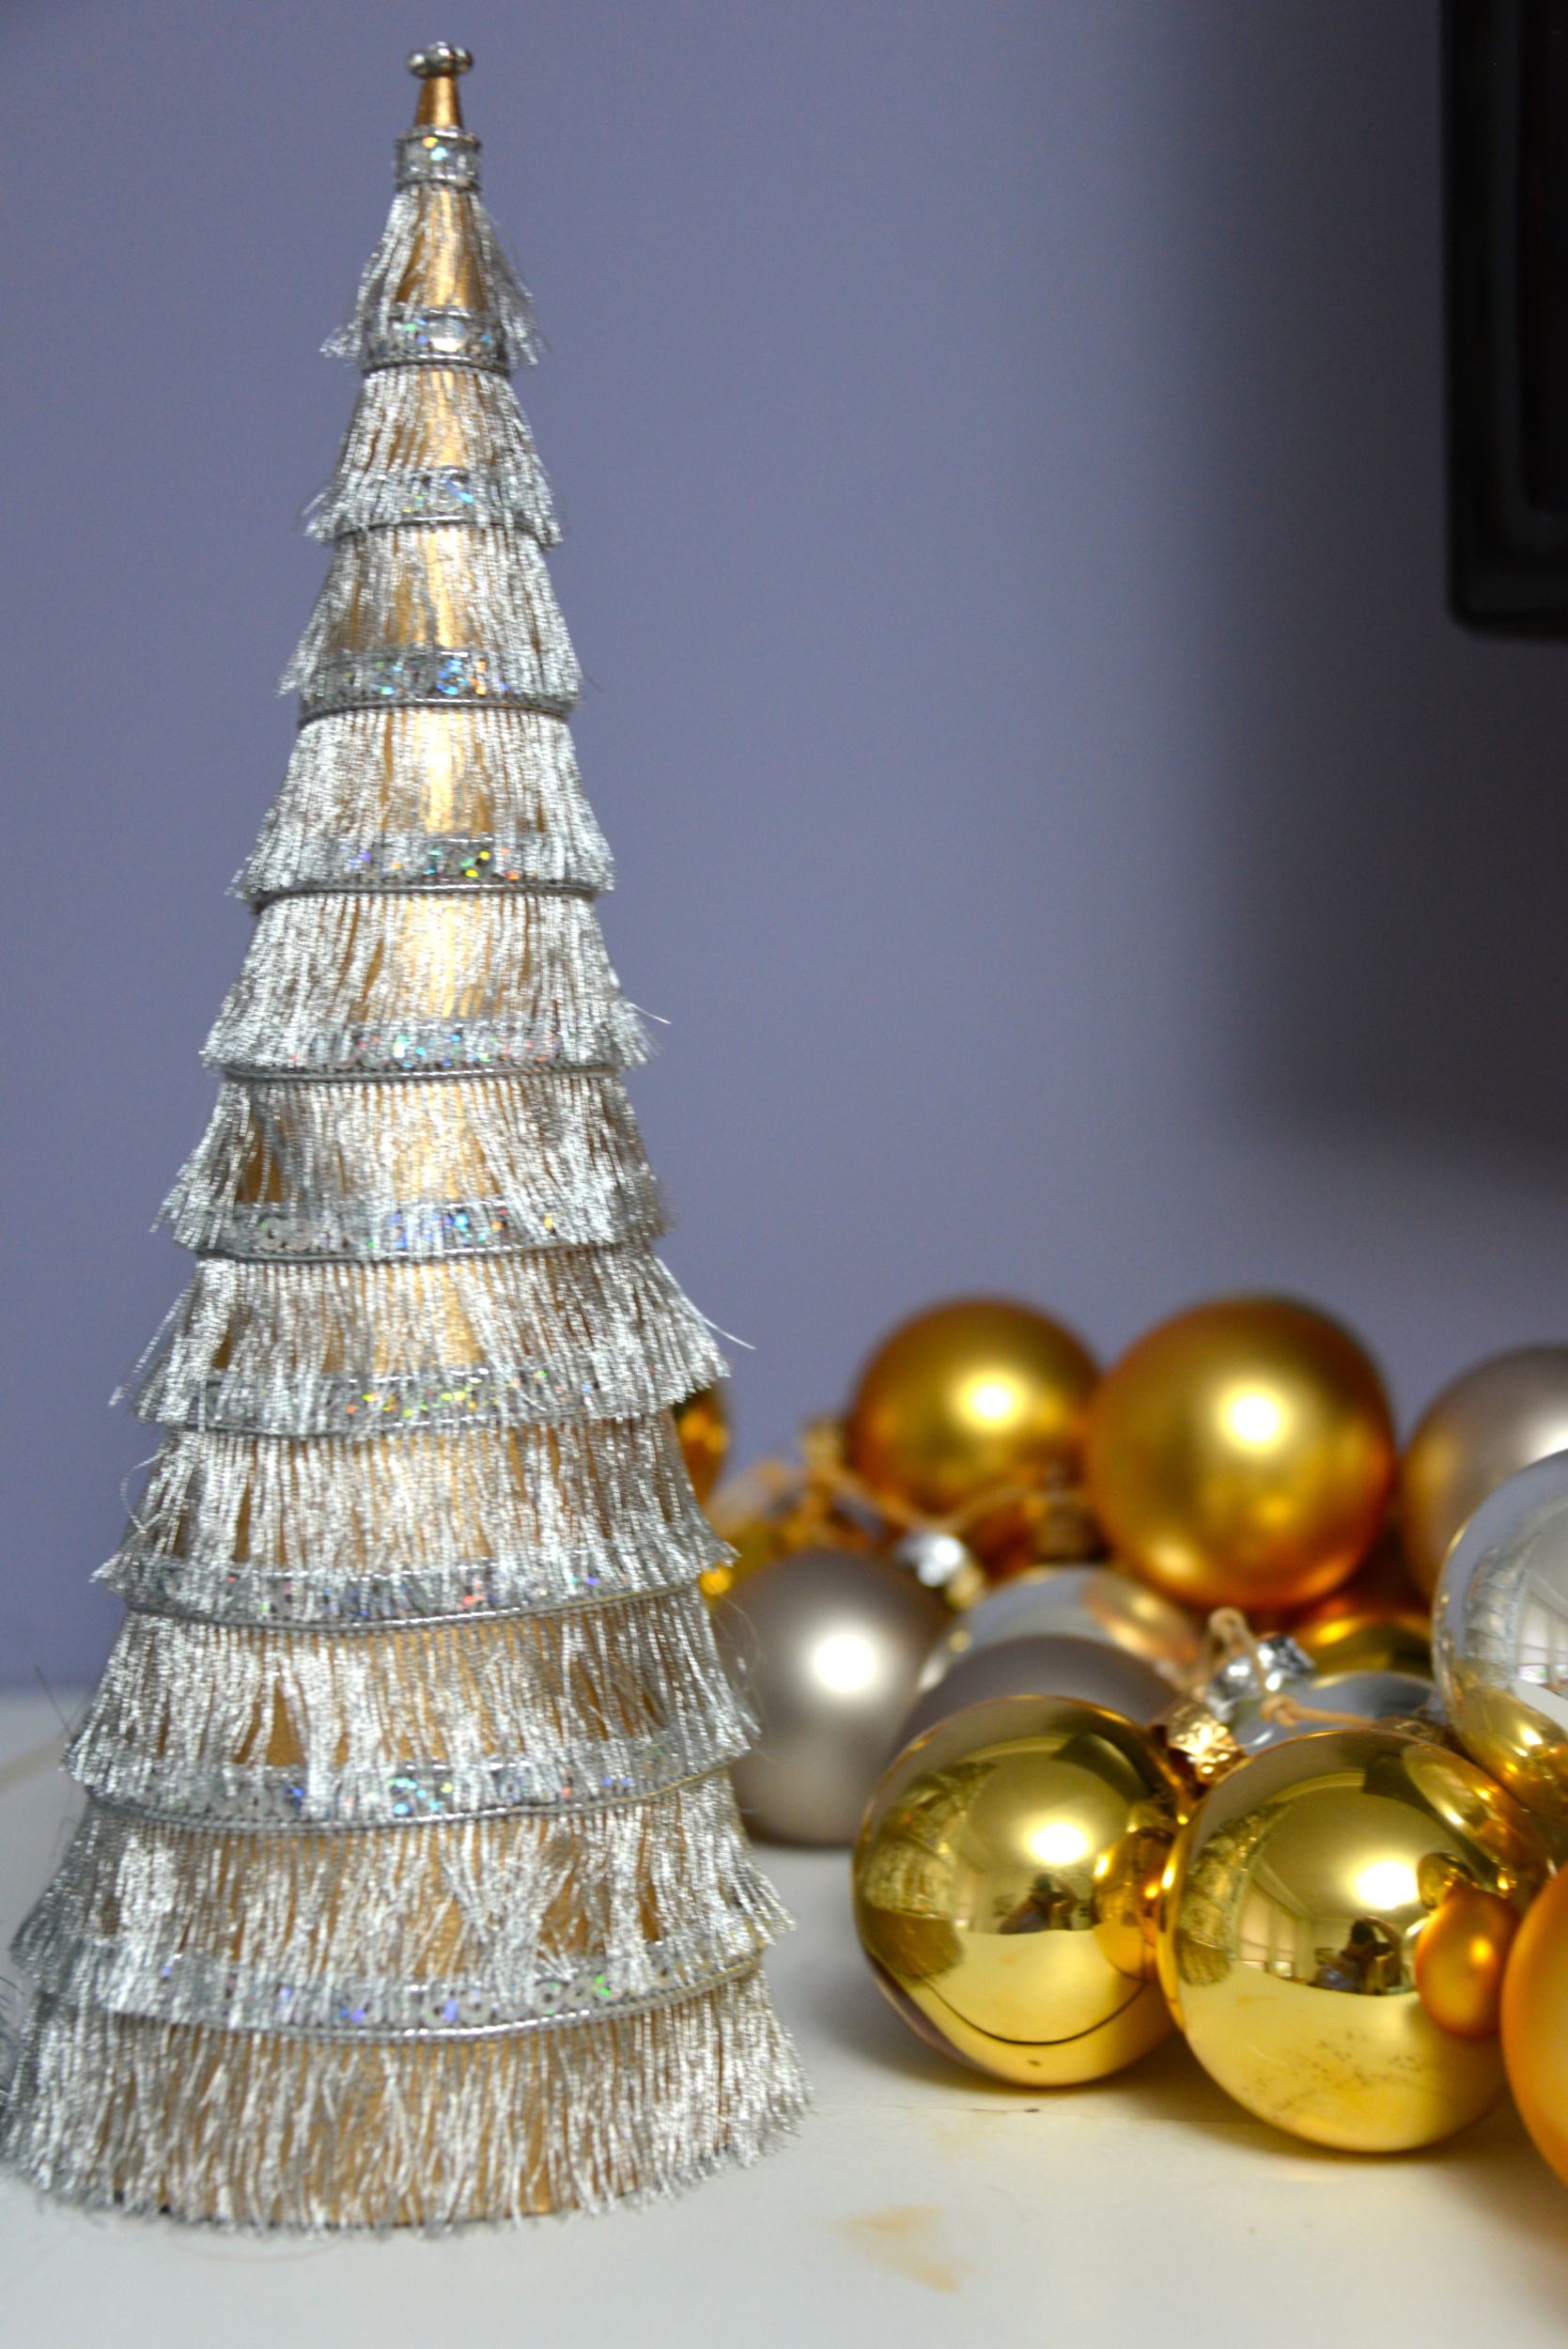 Fringe Christmas Trees - MyFixitUpLife - Holiday DIY holiday crafts